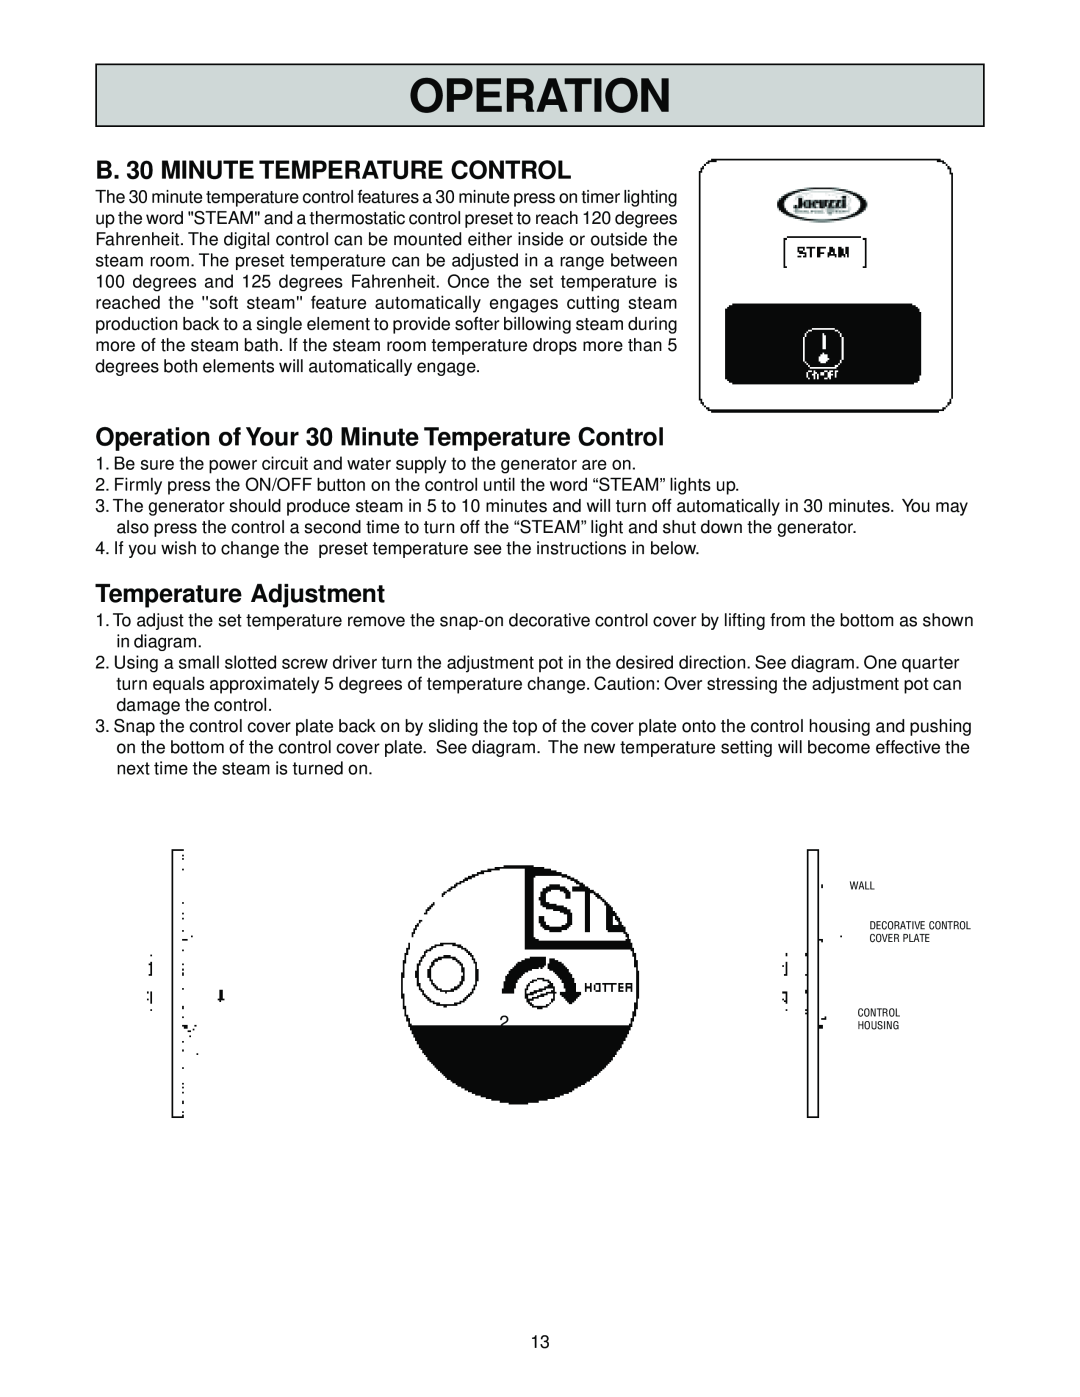 Jacuzzi SteamPro manual B. 30 MINUTE TEMPERATURE CONTROL, Operation of Your 30 Minute Temperature Control 